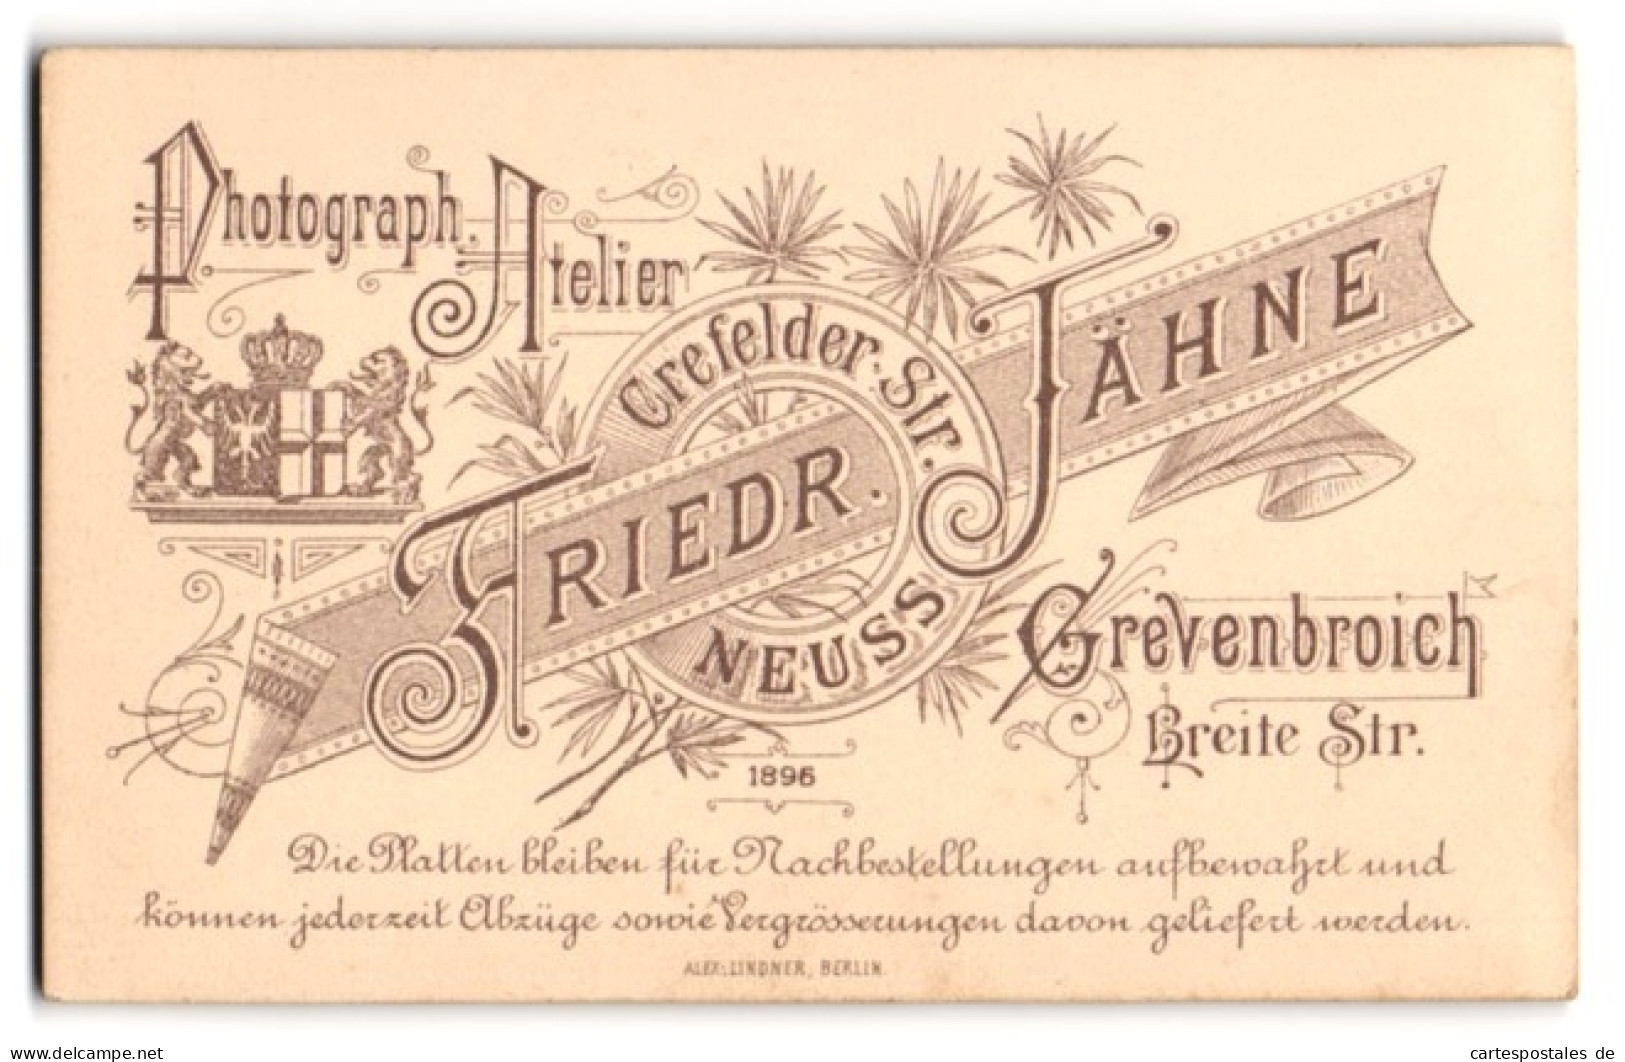 Fotografie Friedr. Jähne, Grevenbroich, Breite Str., Königliches Wappen Nebst Anschriften Der Ateliers  - Anonieme Personen